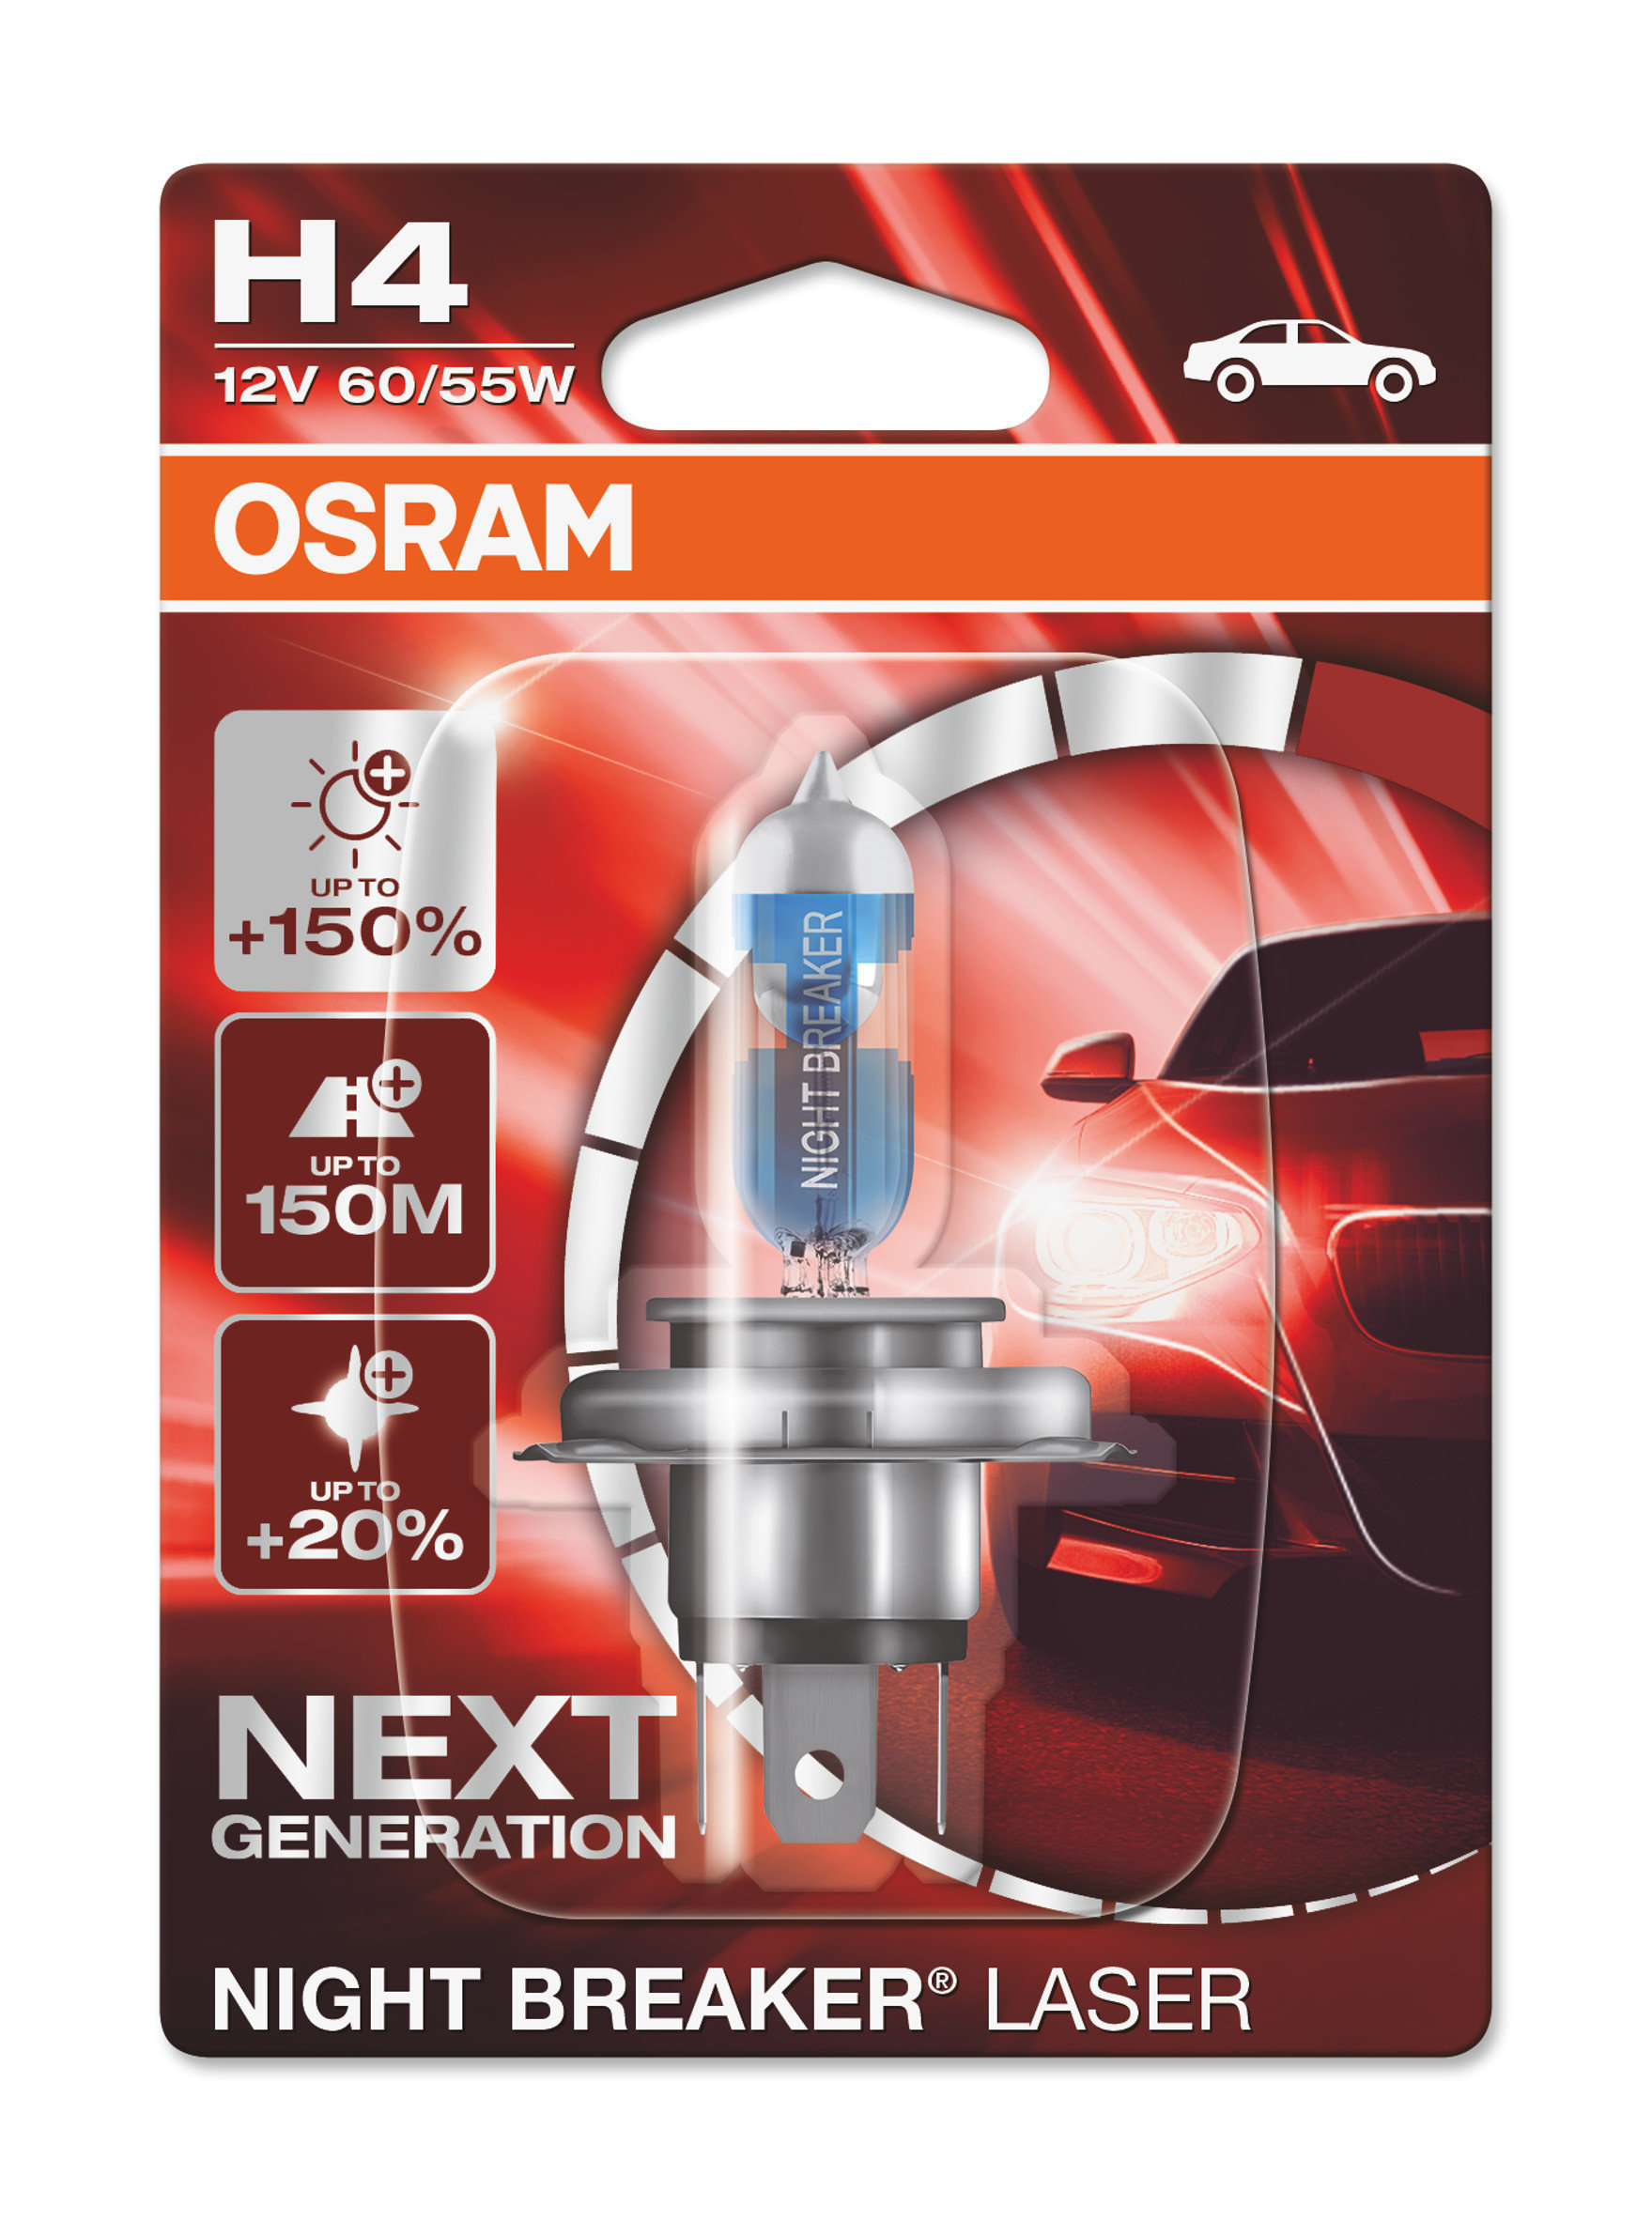 OSRAM NIGHT BREAKER LASER H7 +150% Brighter Halogen Headlight Bulb